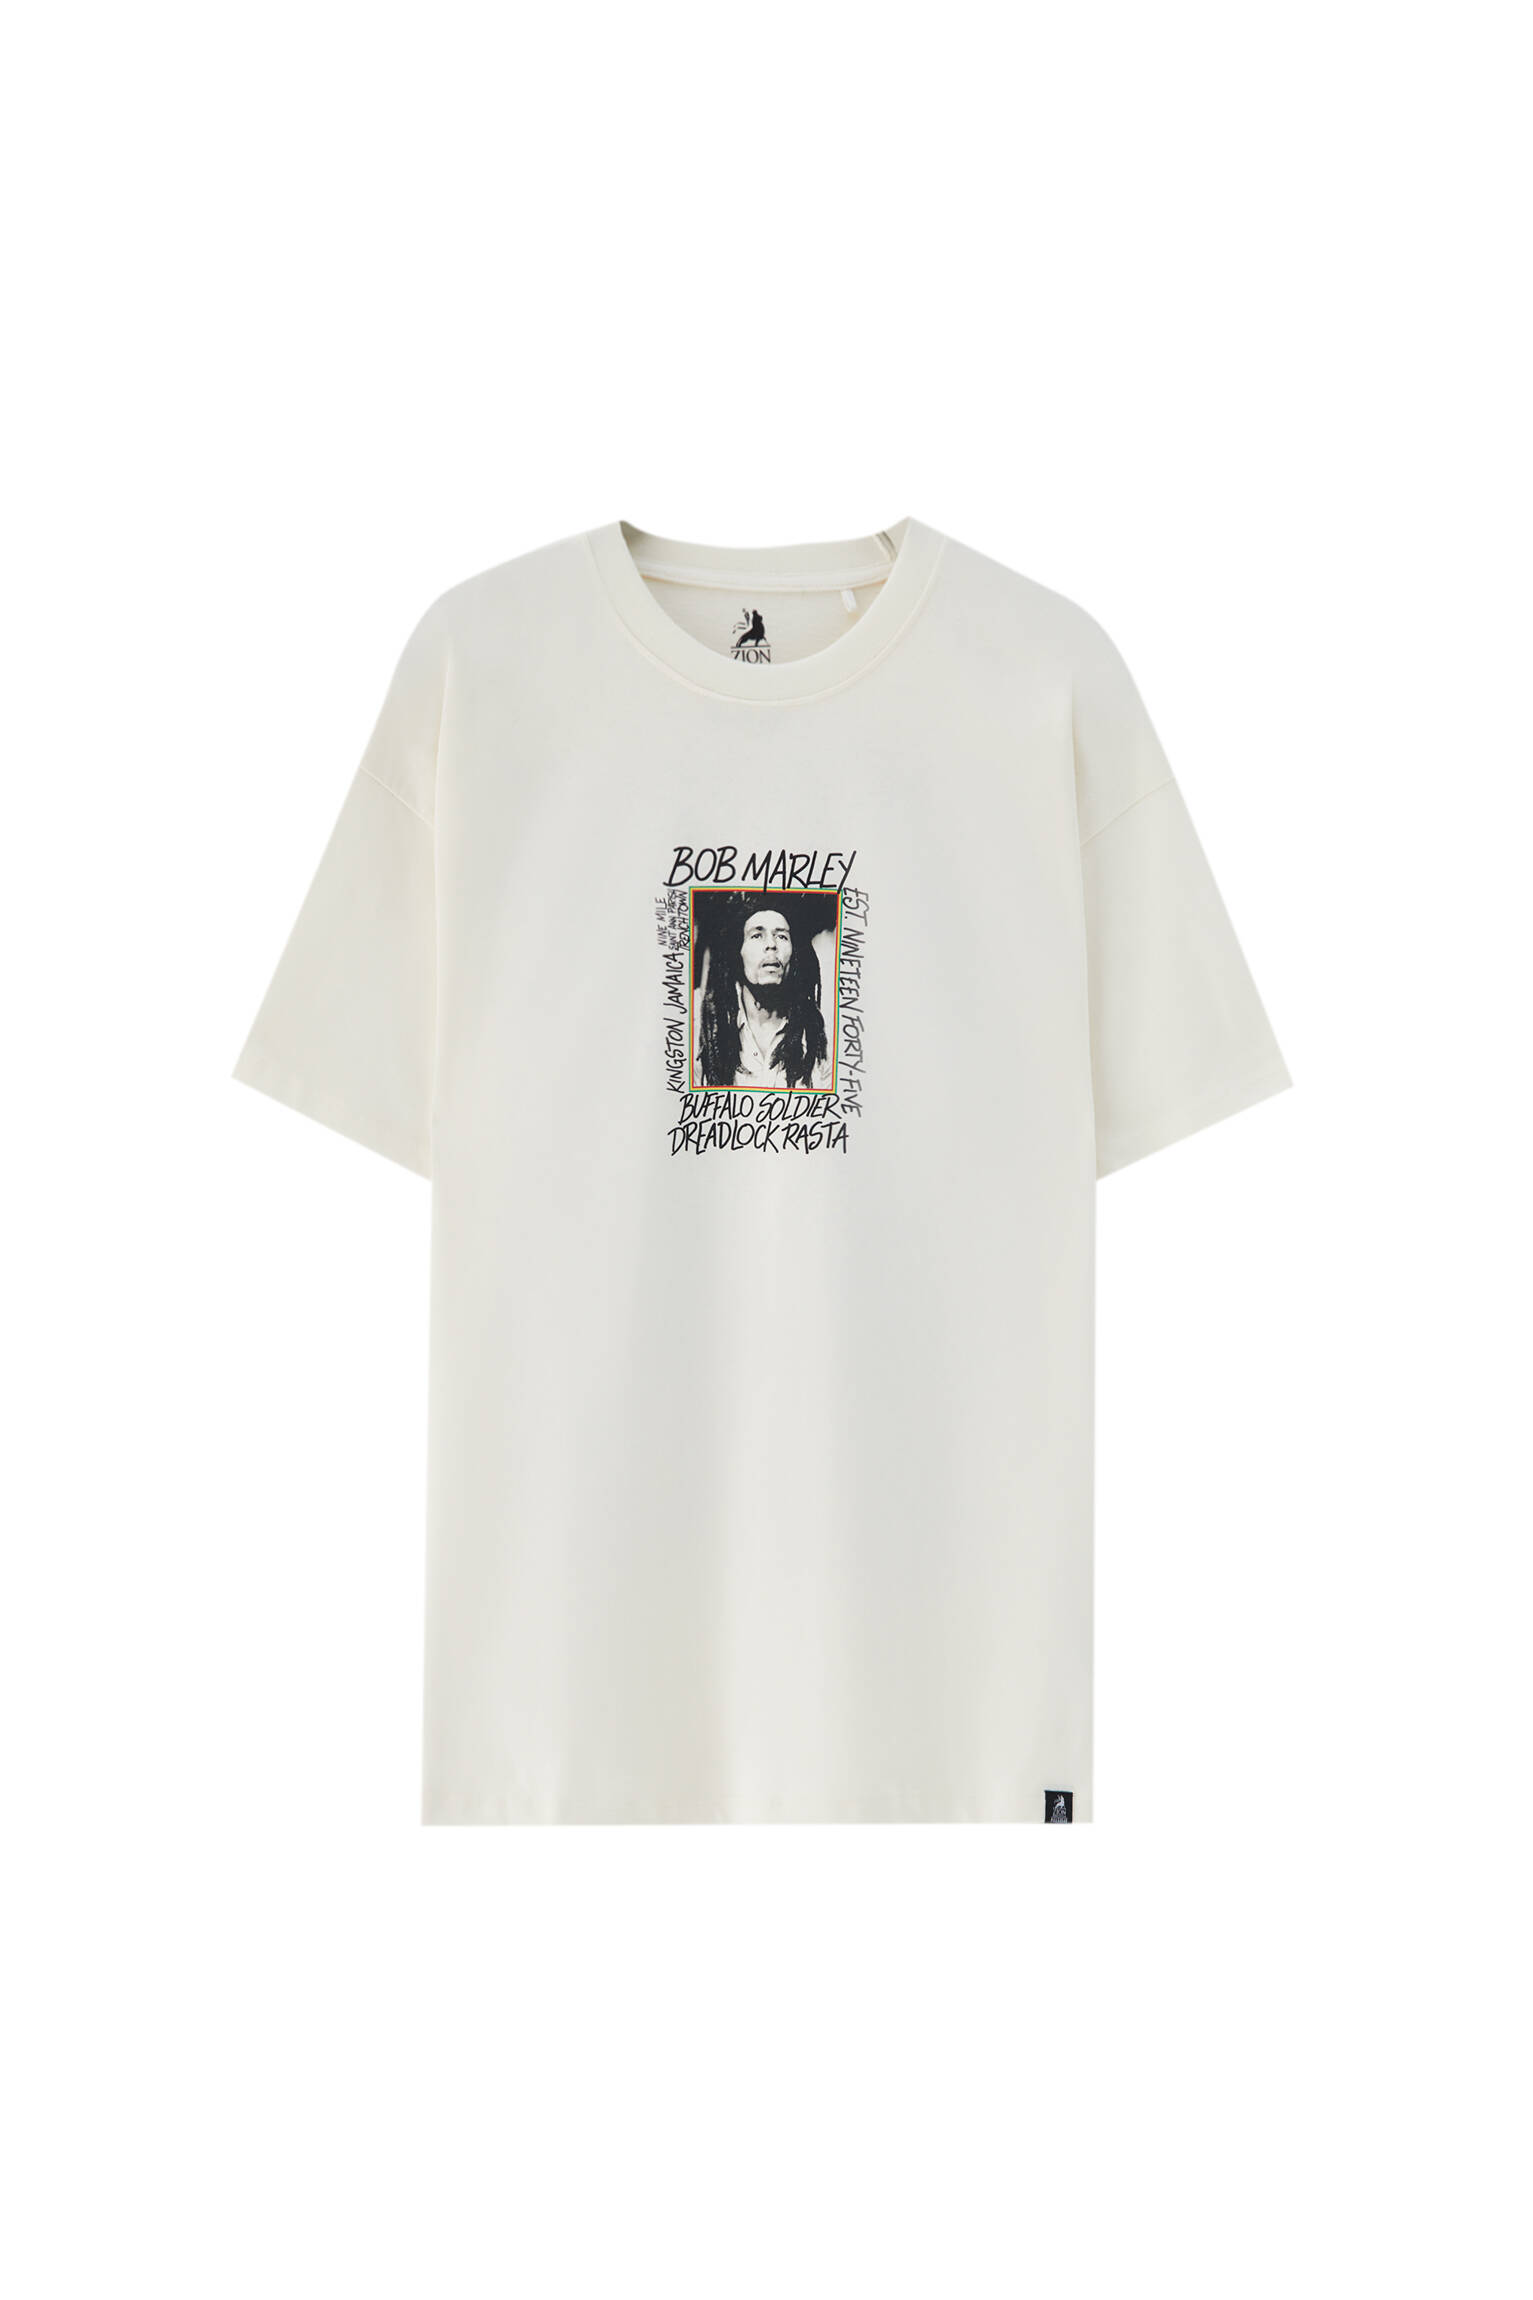 Pull&bear Homme T-shirt Blanc 100 % Coton à Manches Courtes Et Col Rond, Avec Illustration De Bob Marley Sur Le Devant. Blanc CassÉ Xl